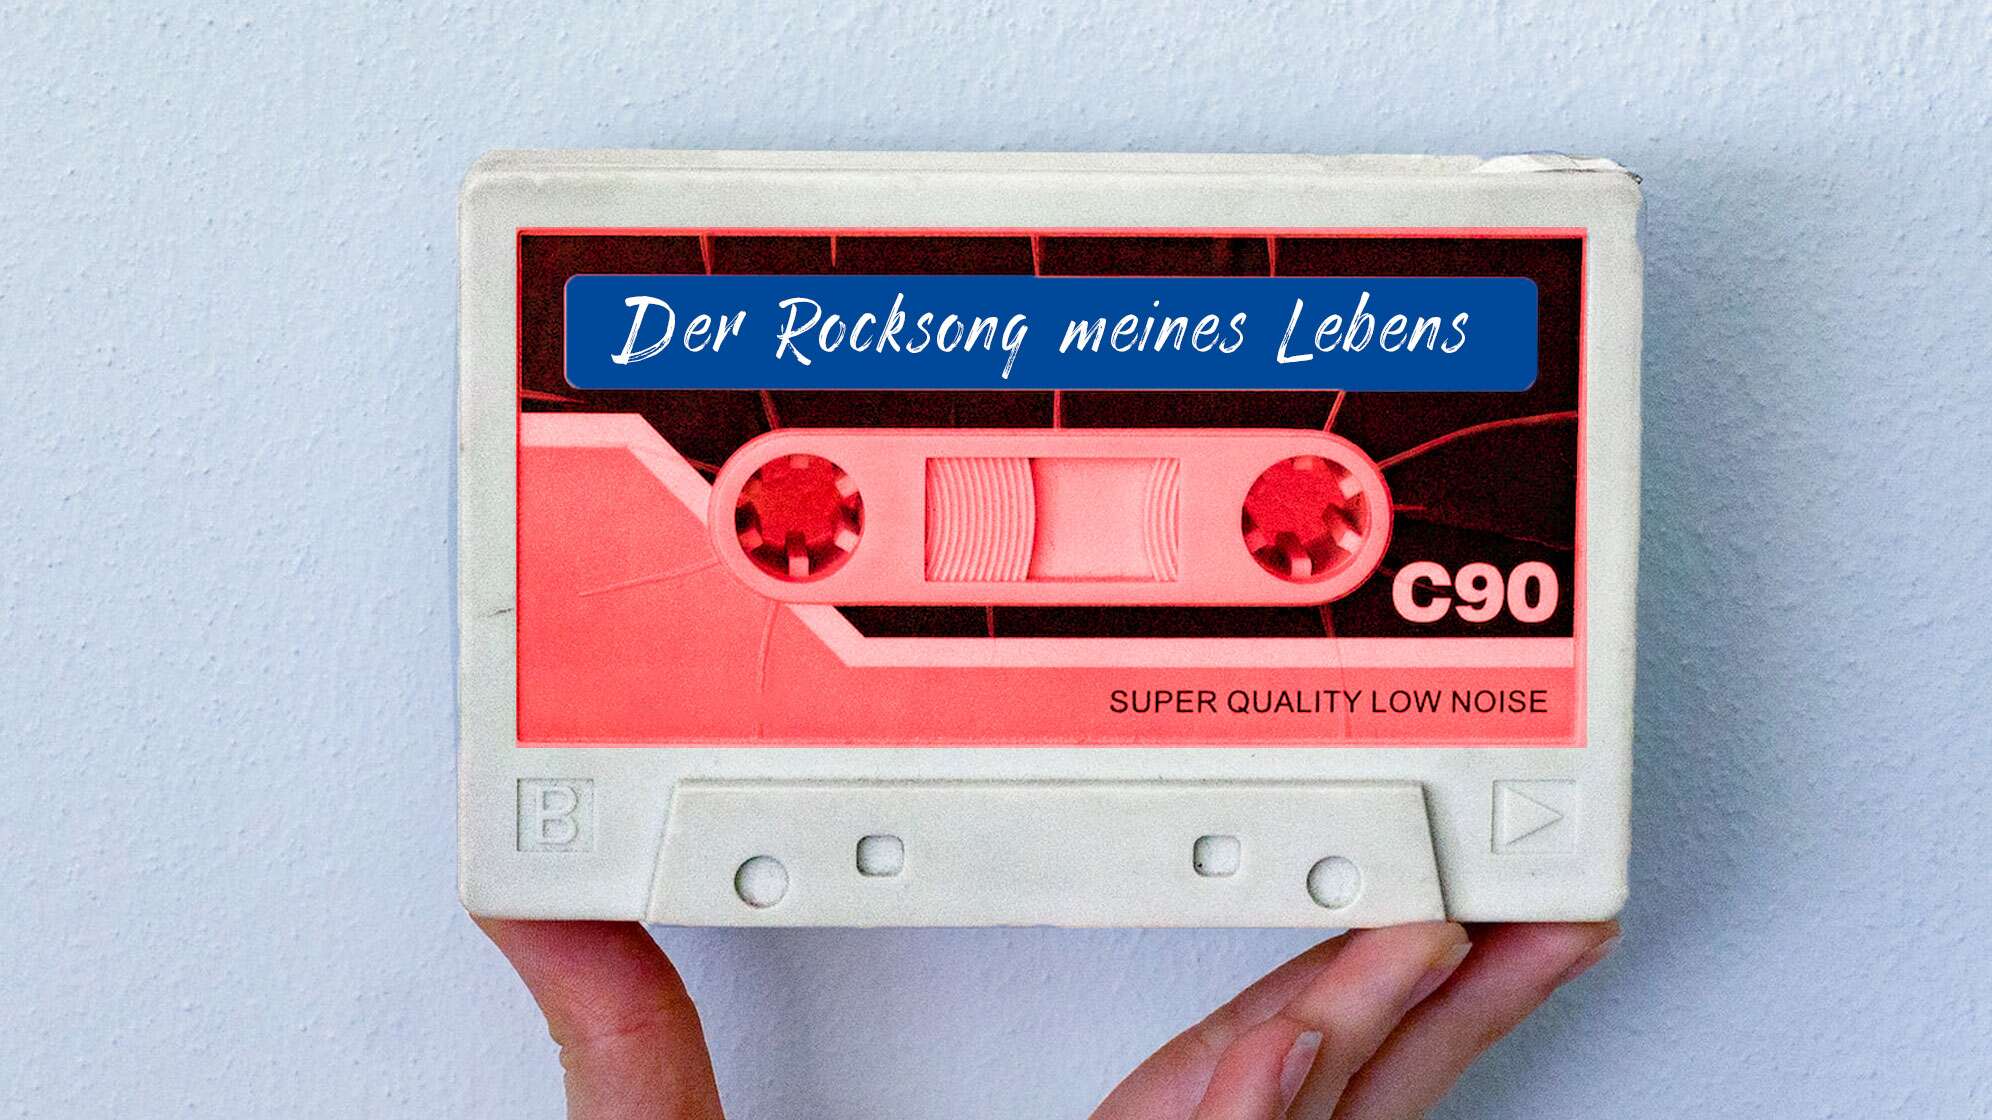 Bild einer Kassette mit der Aufschrift "Der Rocksong meines Lebens"